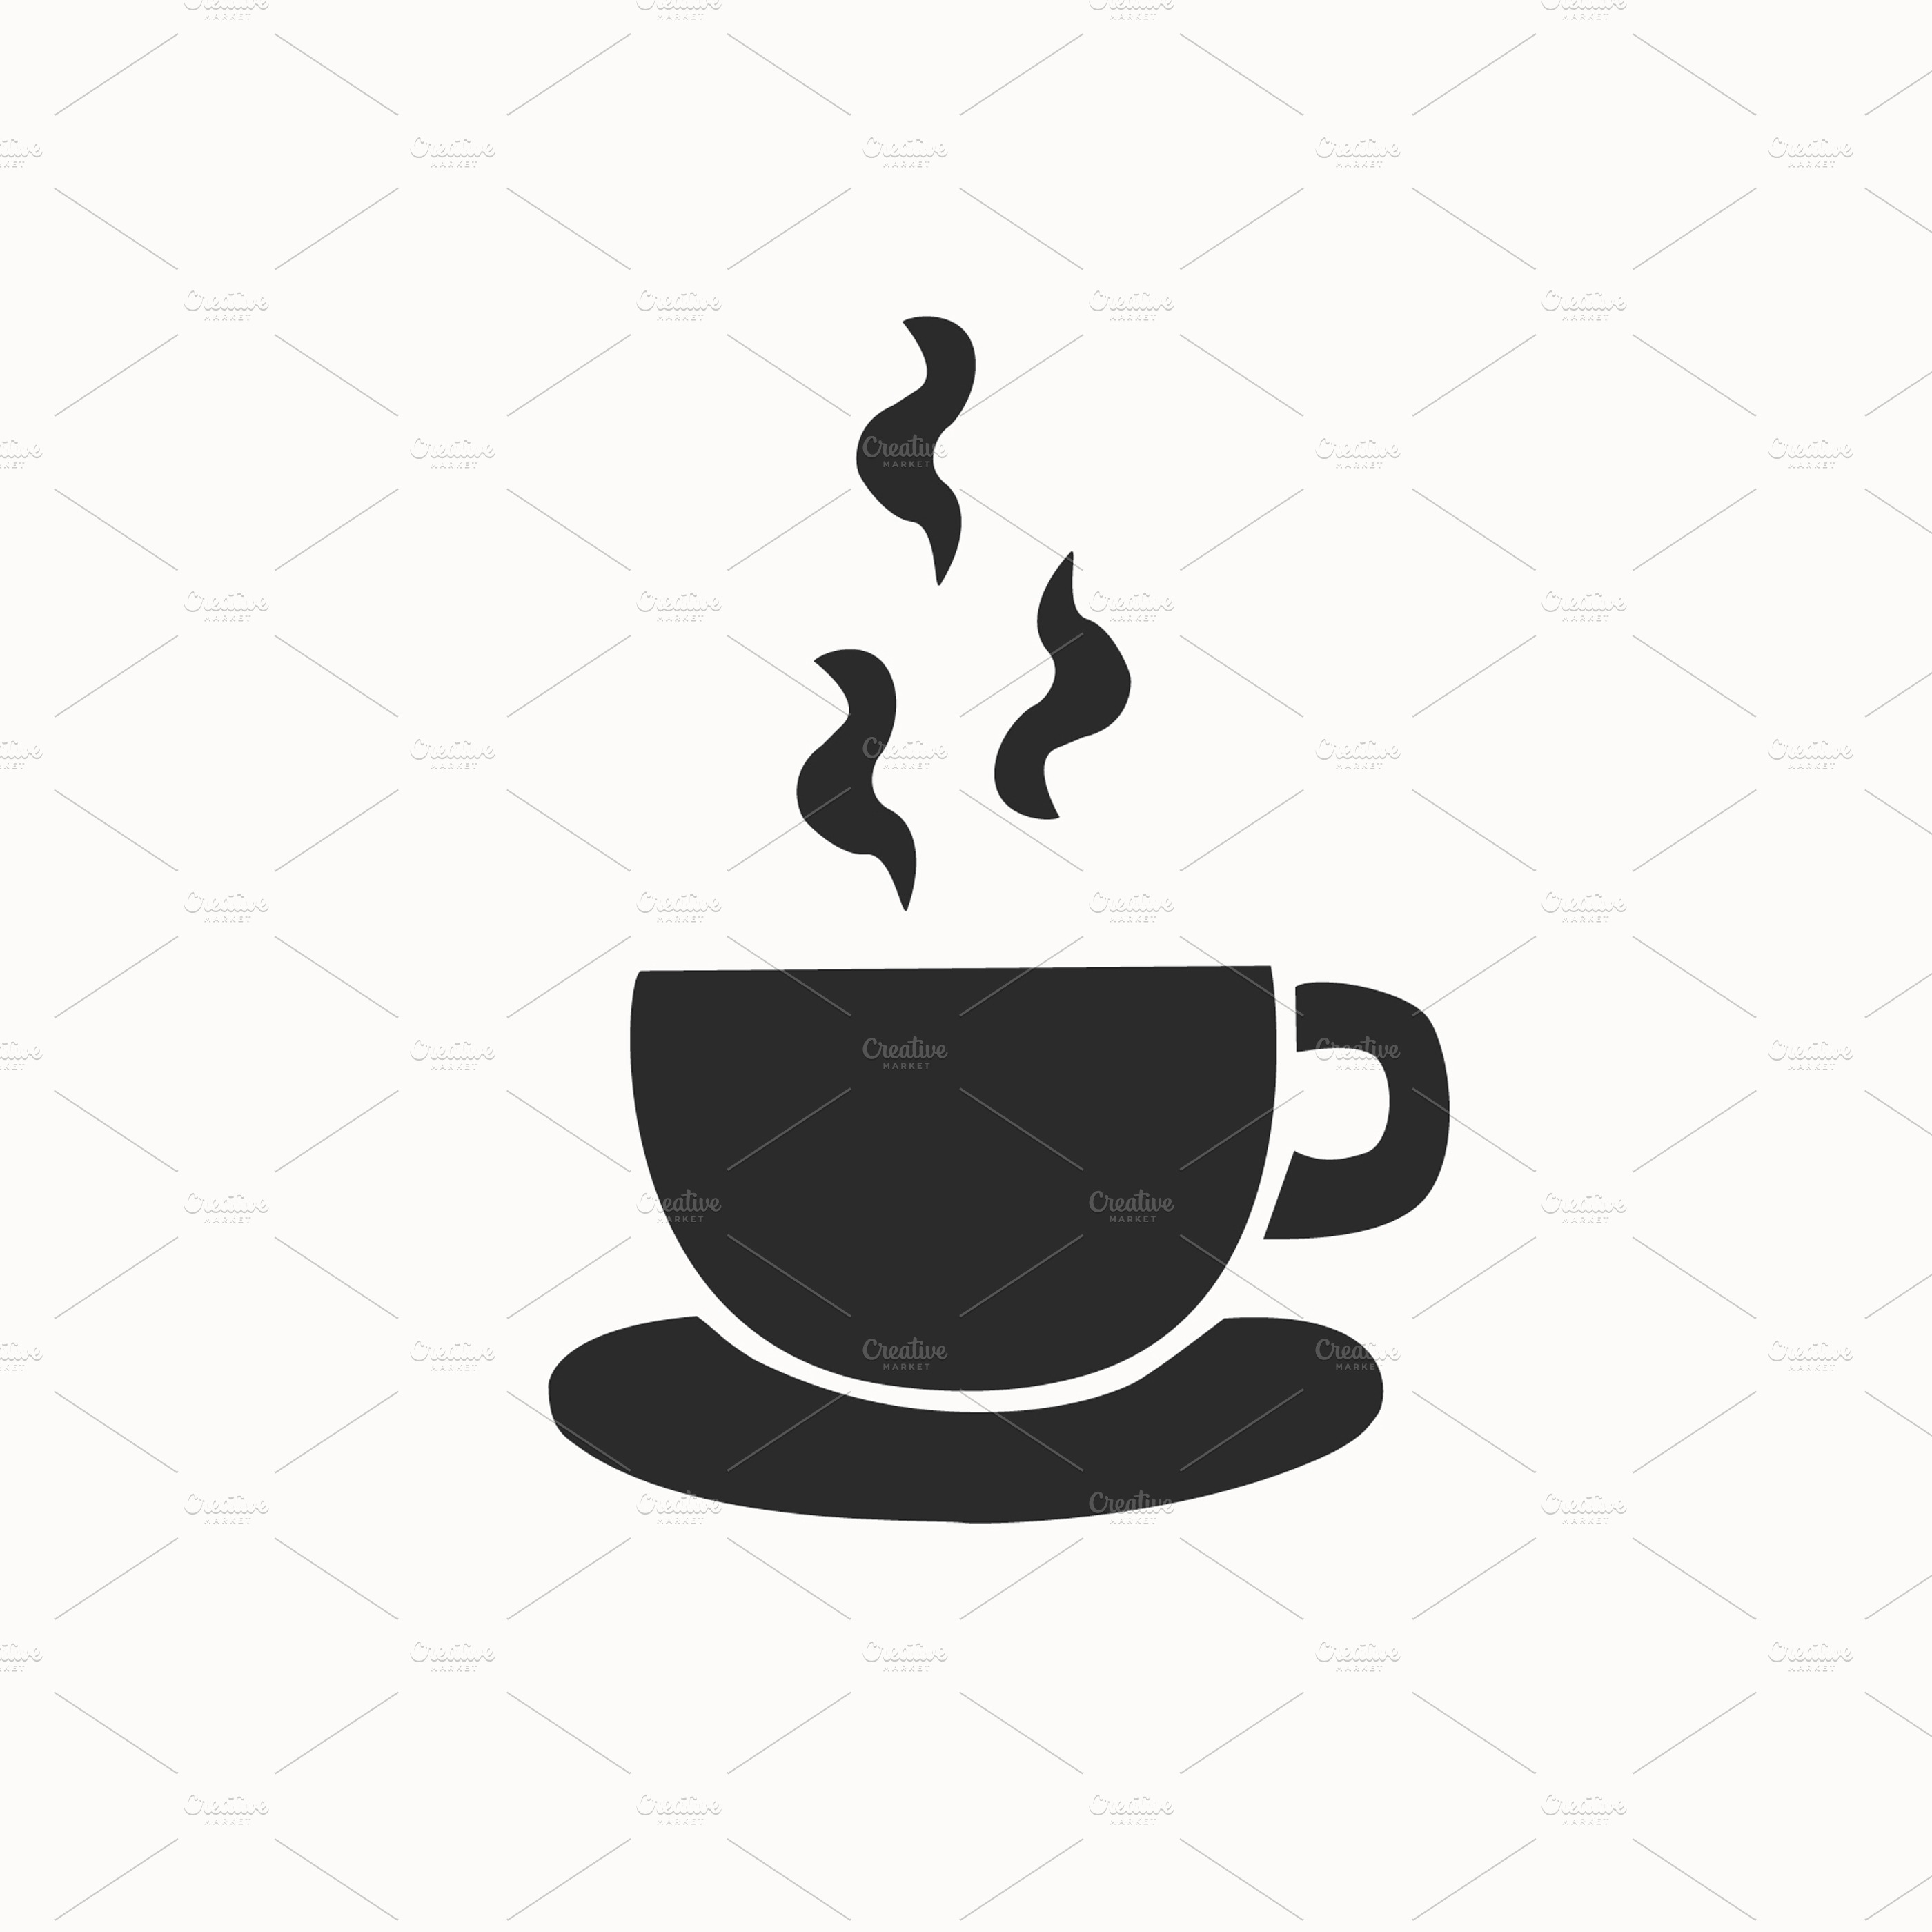 themes portfolio tumblr ~ Creative Coffee Icons logo ~ Market